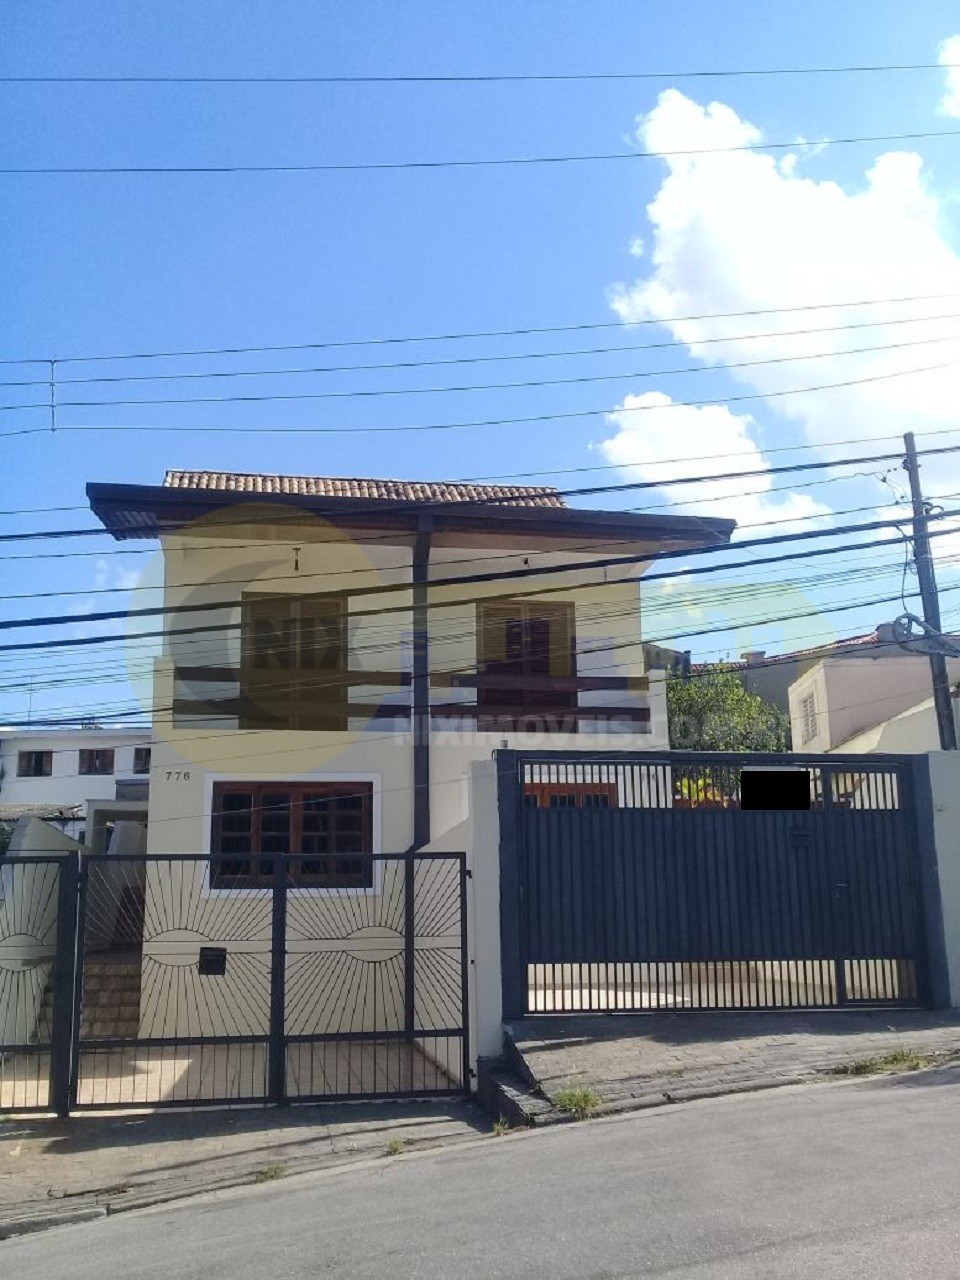 Comprar Casa Butanta Metro Vila Sonia Facil Acesso Usp lindo imóvel triplex ótima localização. Quartos grandes, varanda, vista livre, sala e quintal amplos!